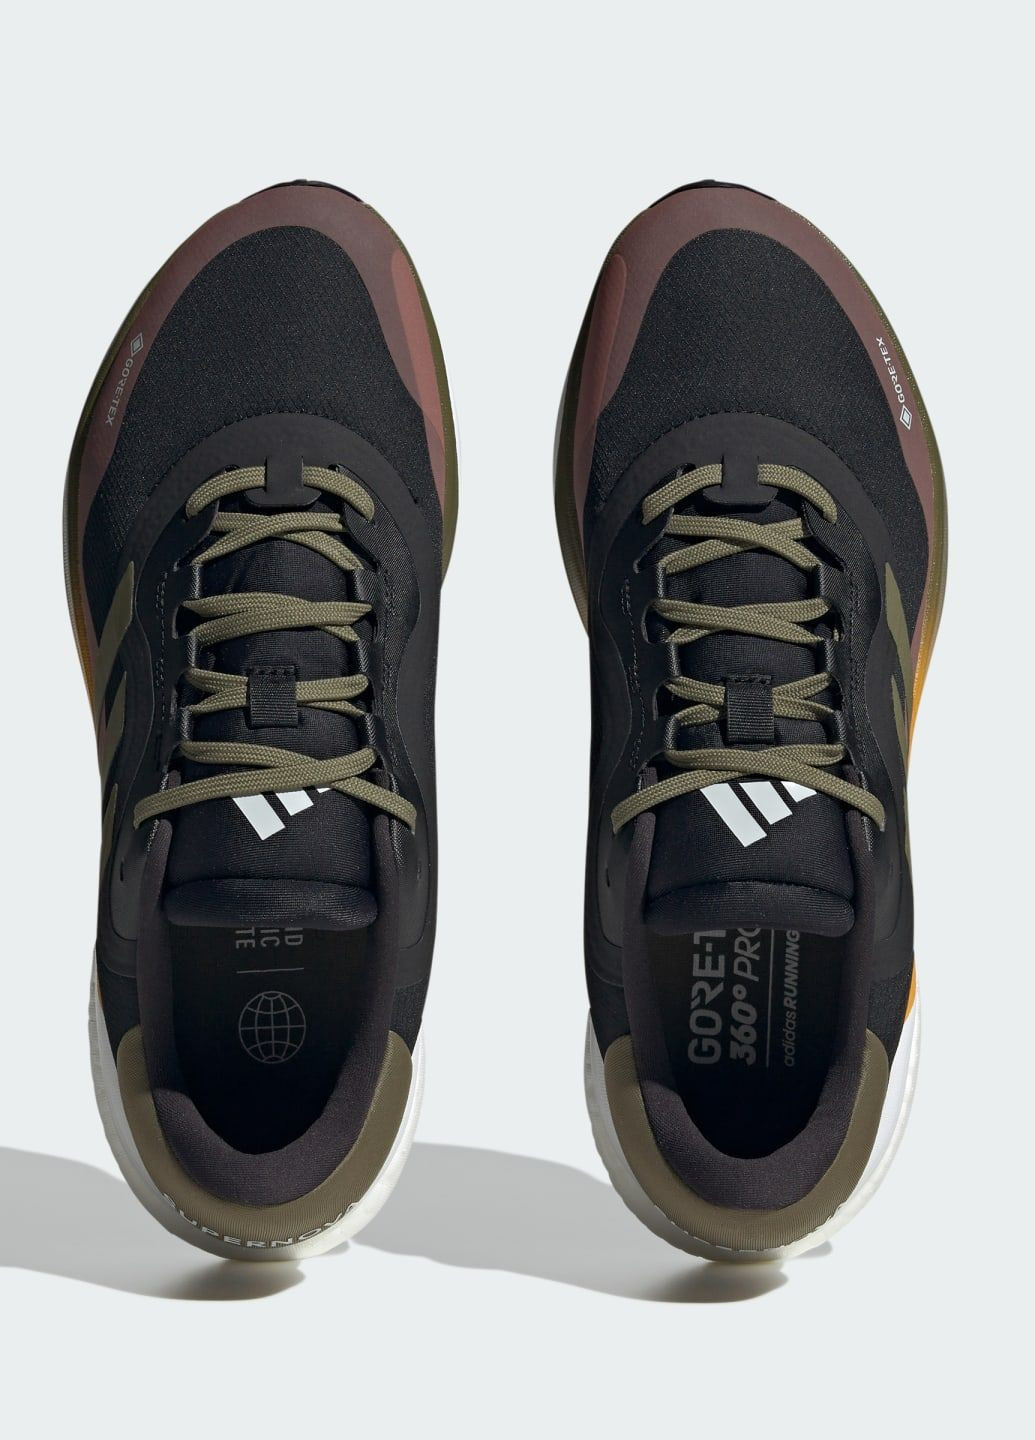 Черные всесезонные беговые кроссовки supernova 3 gtx adidas